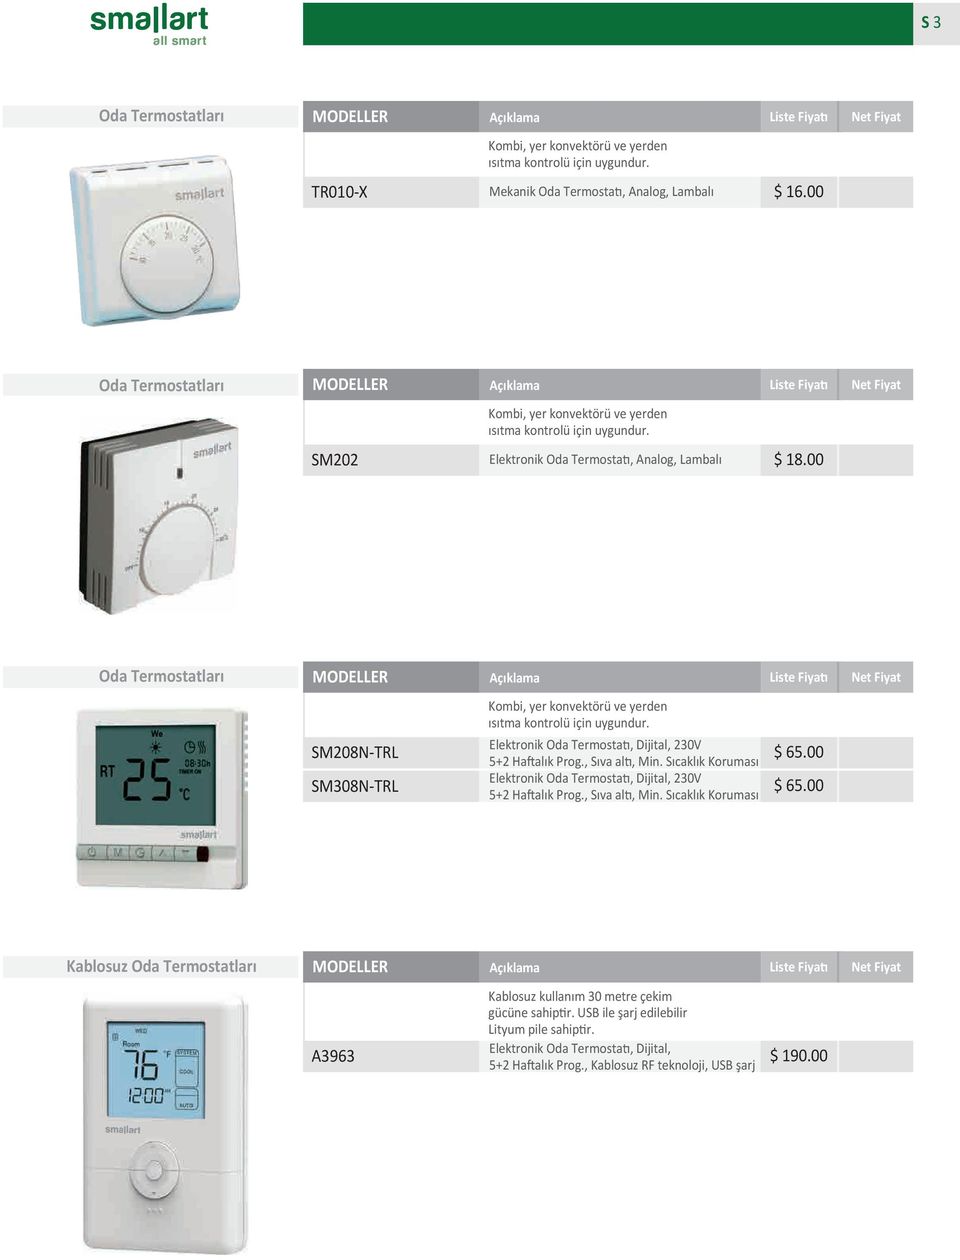 00 Oda Termostatları SM208NTRL SM308NTRL Kombi, yer konvektörü ve yerden ısıtma kontrolü için uygundur. Elektronik Oda Termostatı, Dijital, 230V 5+2 Haftalık Prog., Sıva altı, Min.